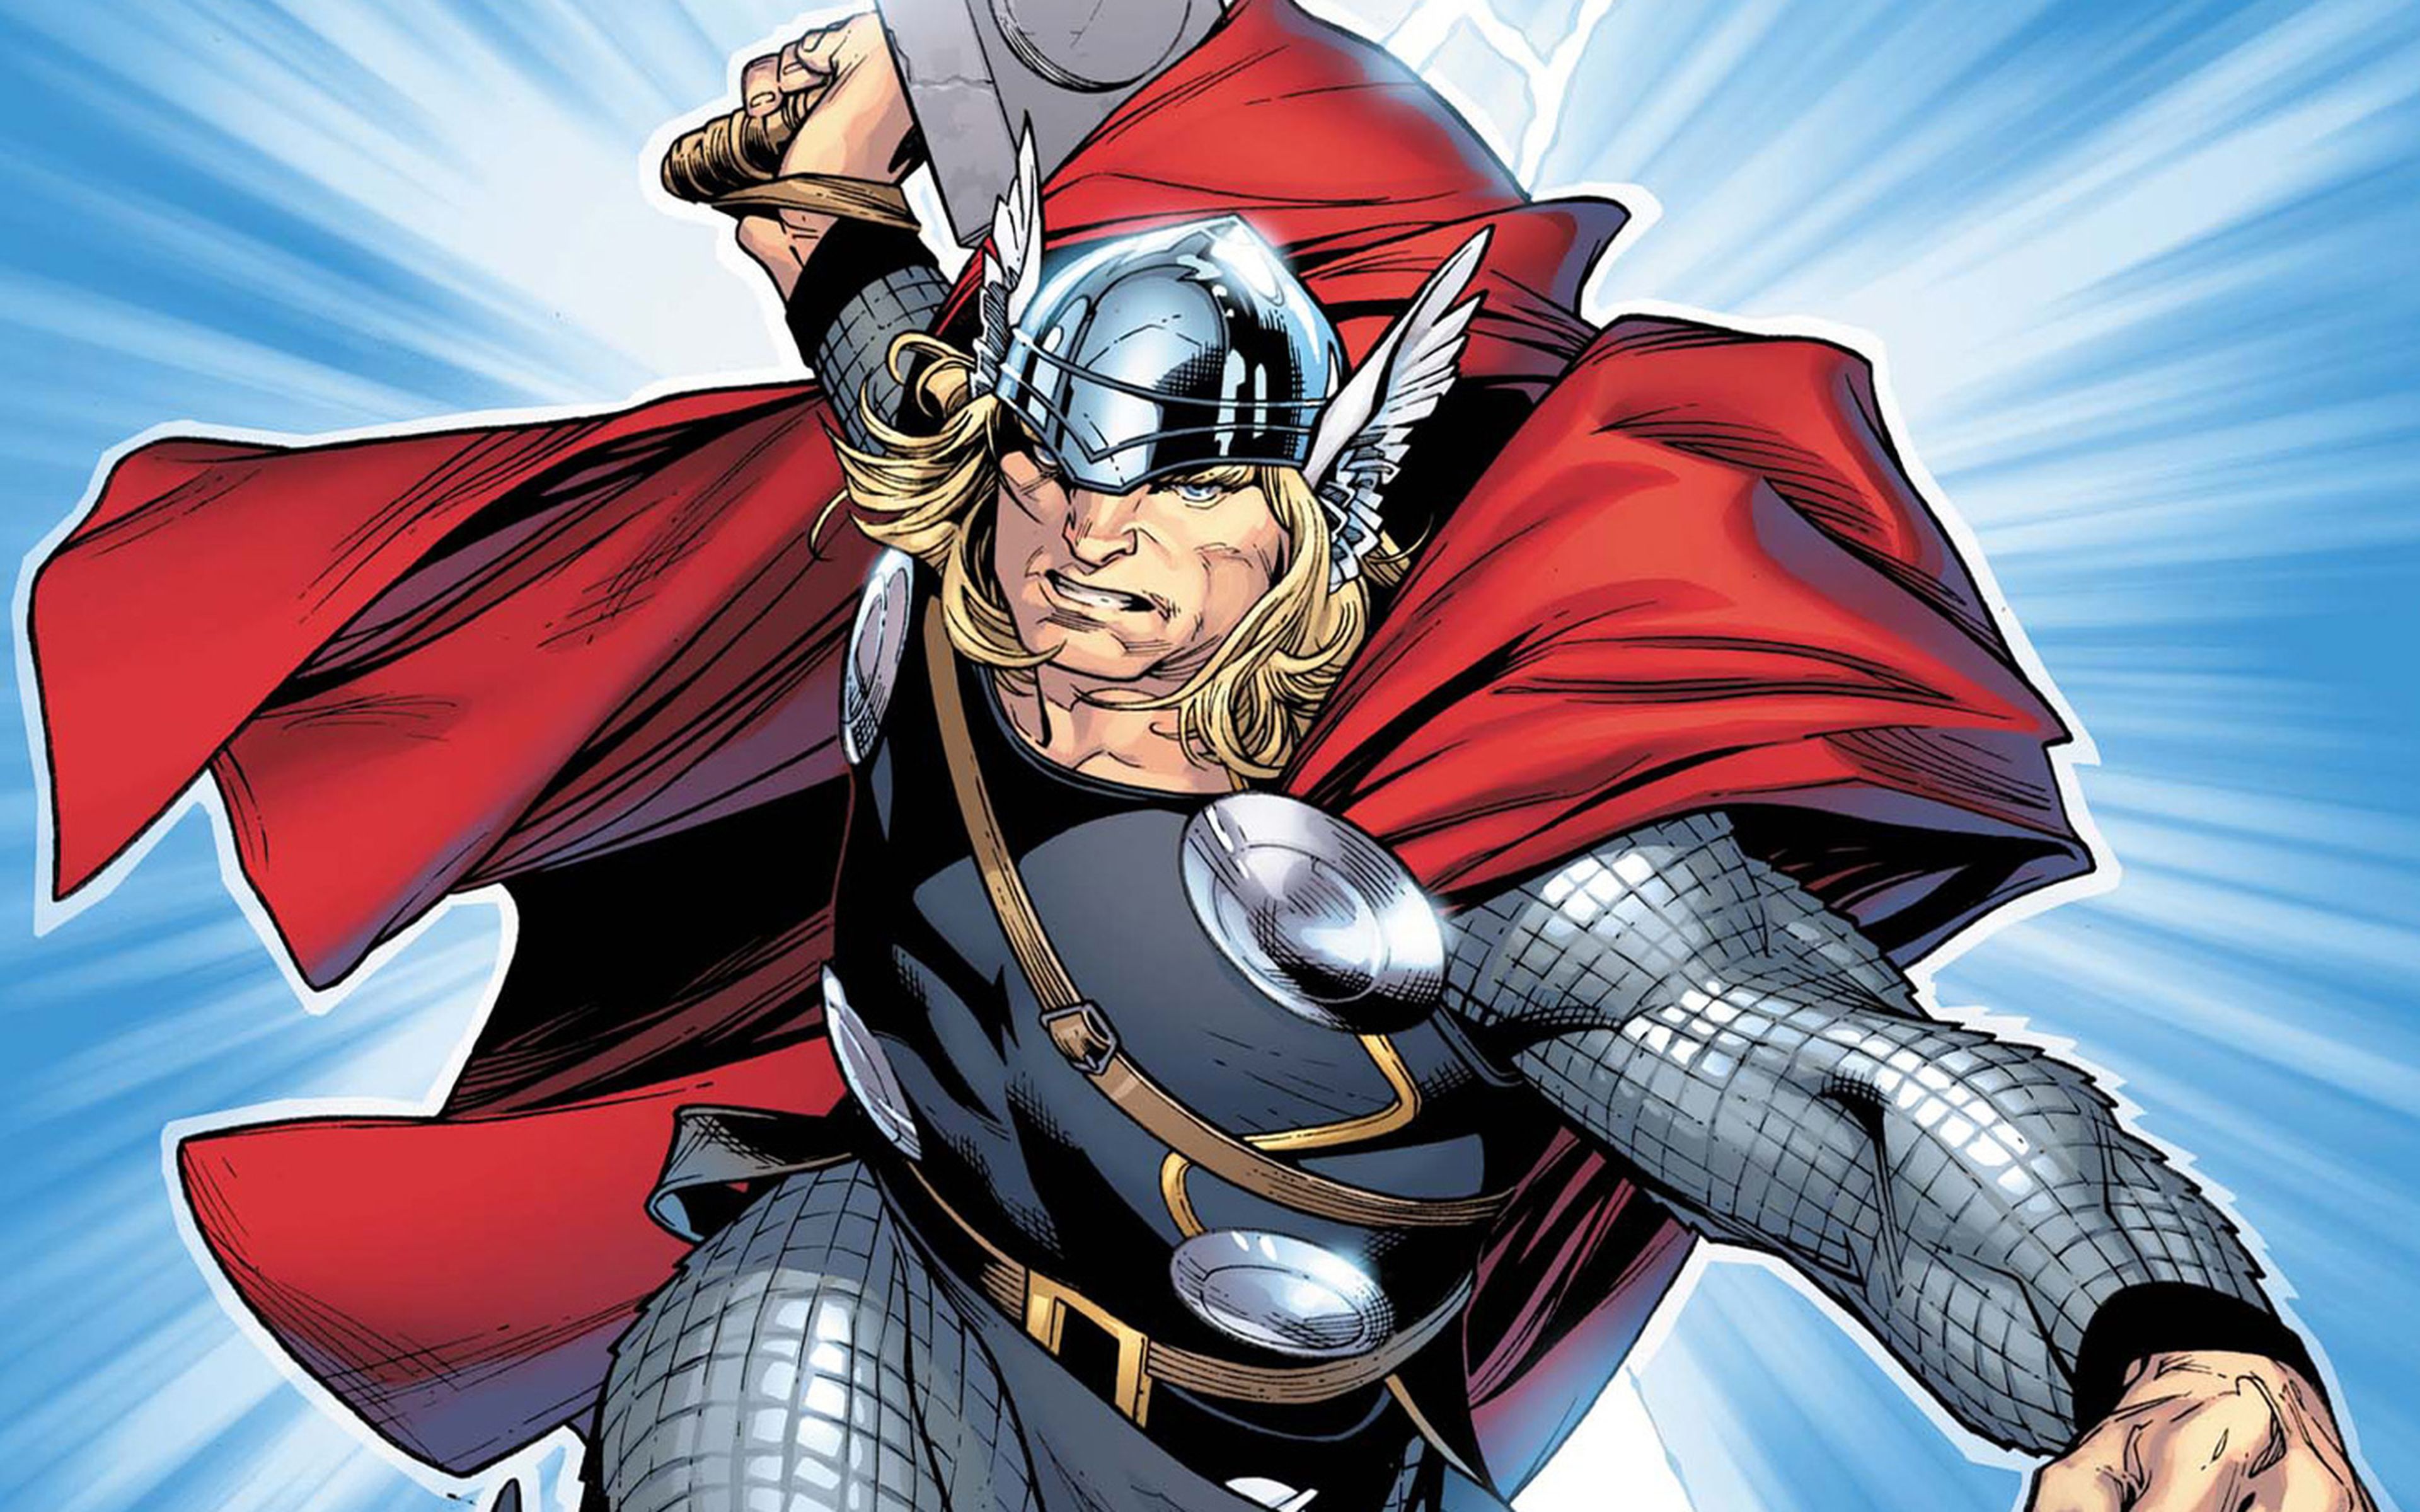 Thor descargará su furia en las consolas